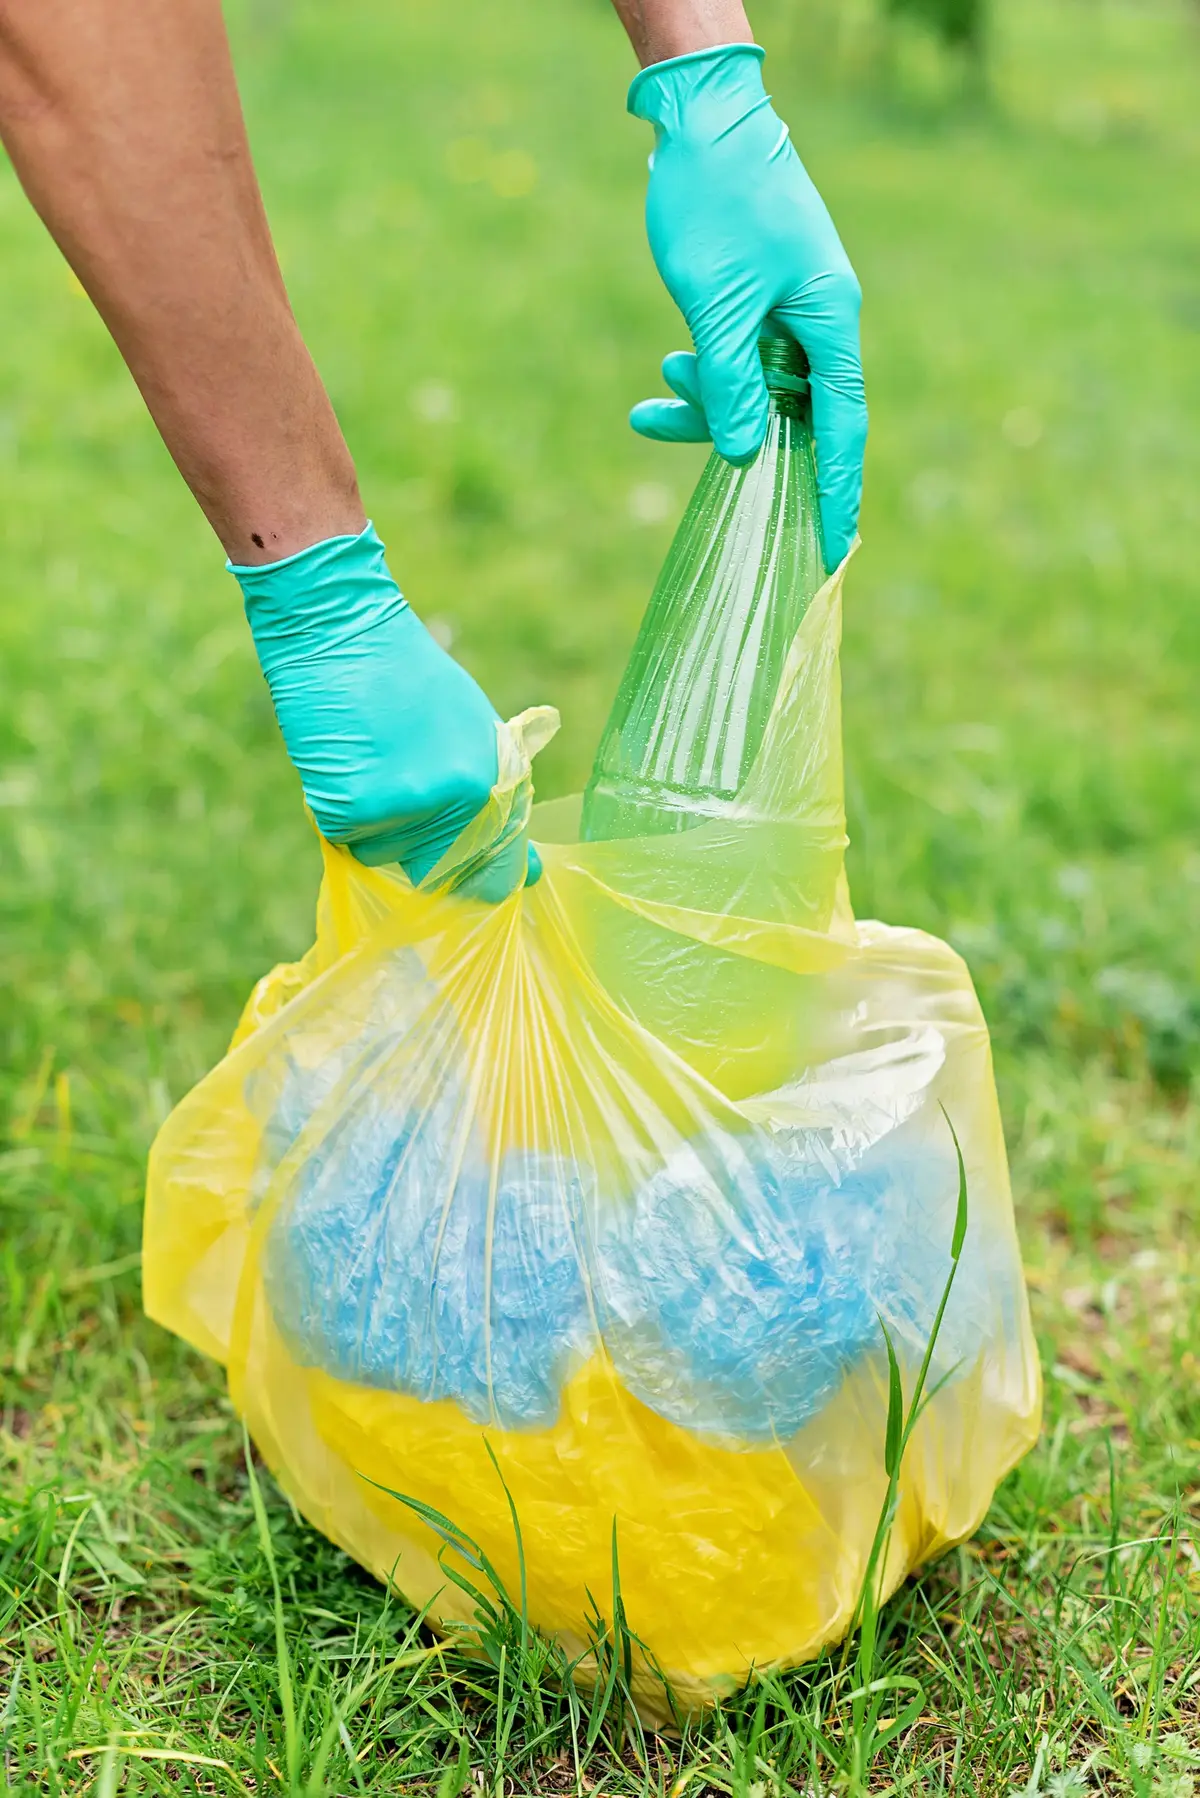 Ktoś zbiera plastikowe śmieci w zielonych rękawiczkach do żółtego worka